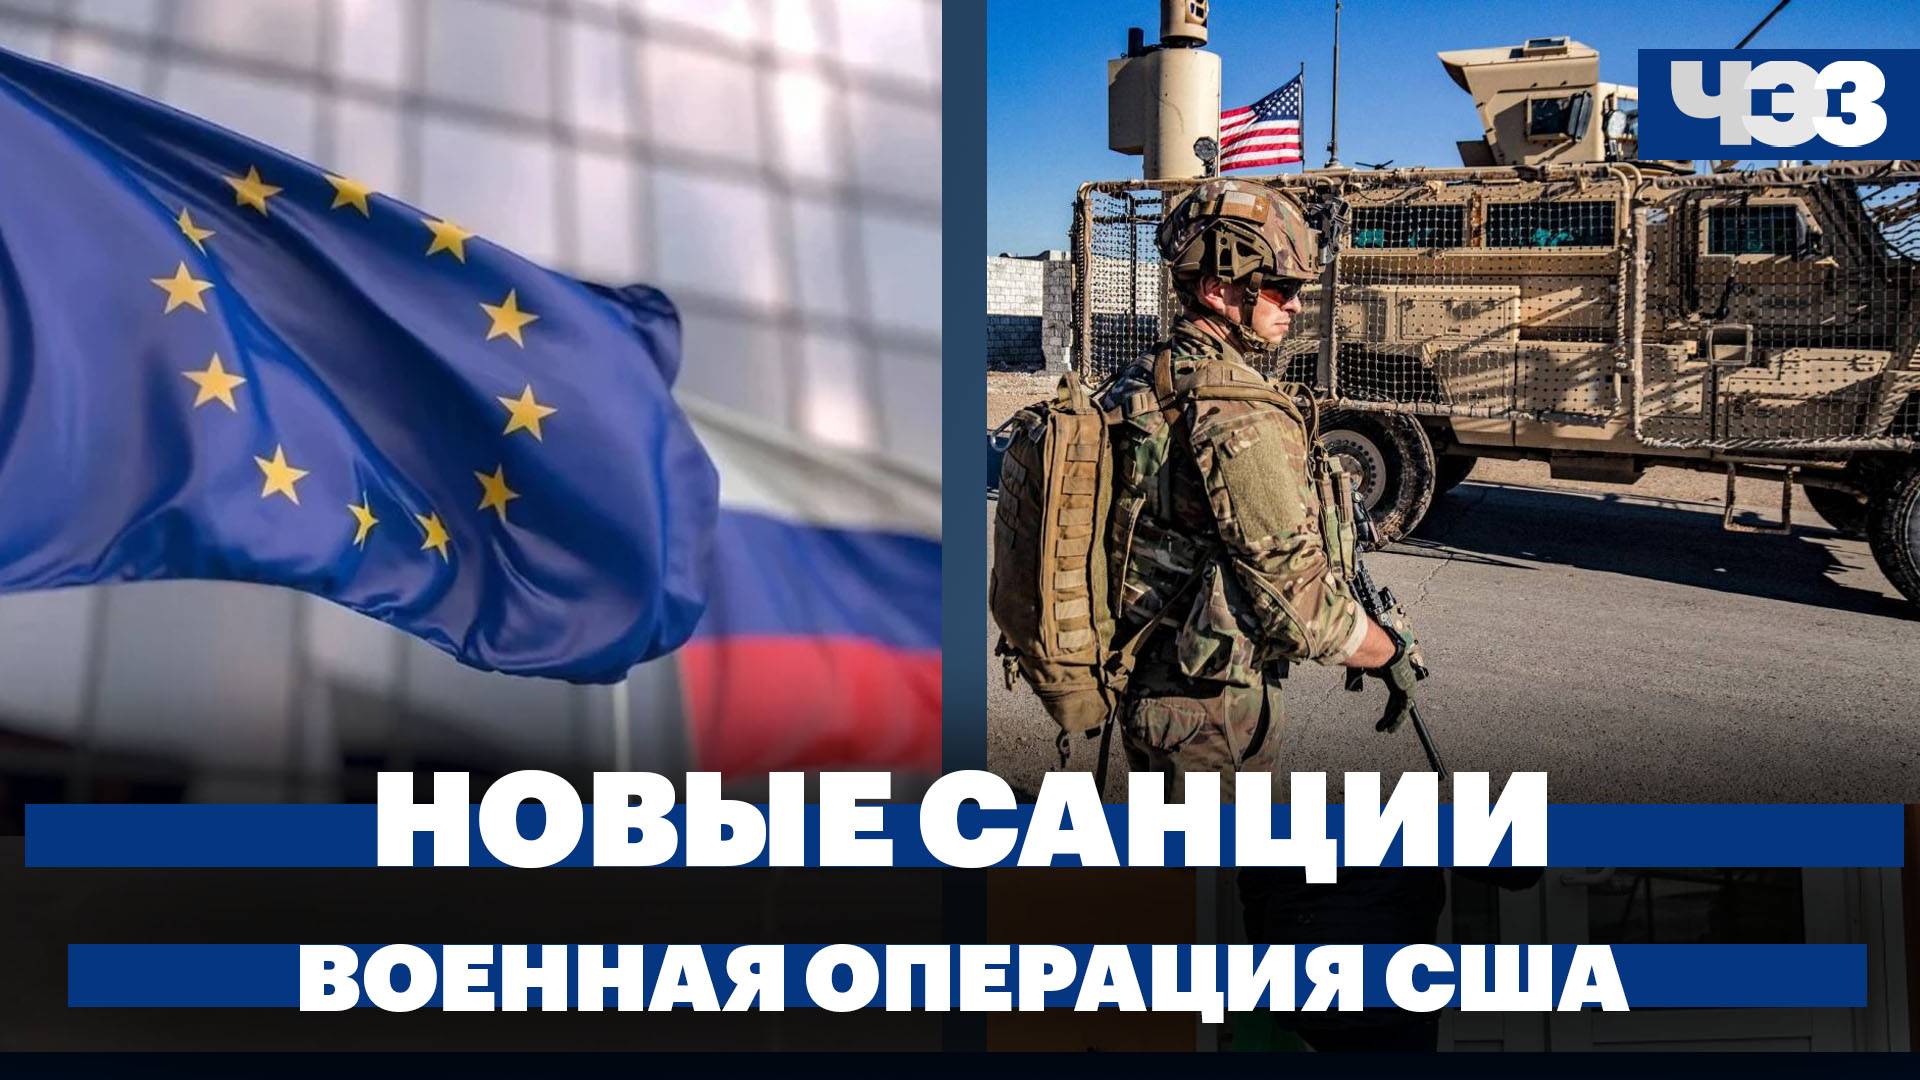 ЕС ввел во внешнюю торговлю правило «No Russia», военная операция США в Красном море